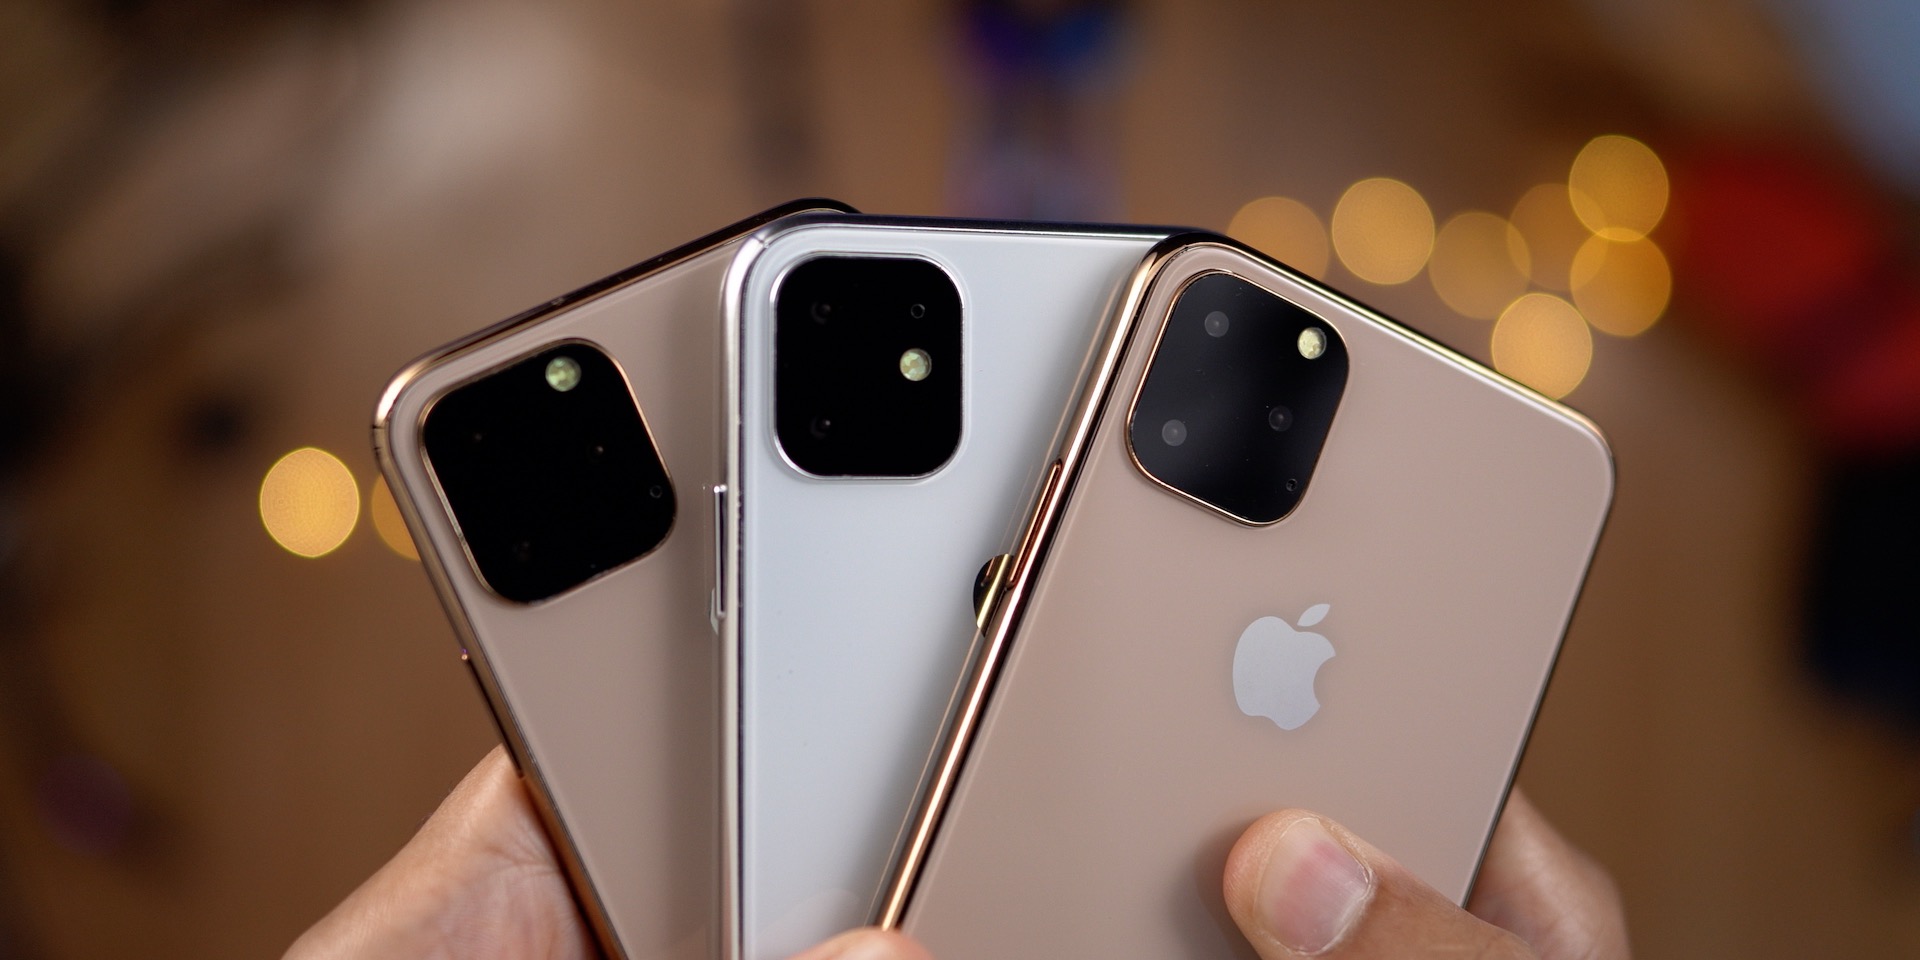 Wat zijn de verschillen tussen de iPhone 11 en de iPhone 11 Pro?